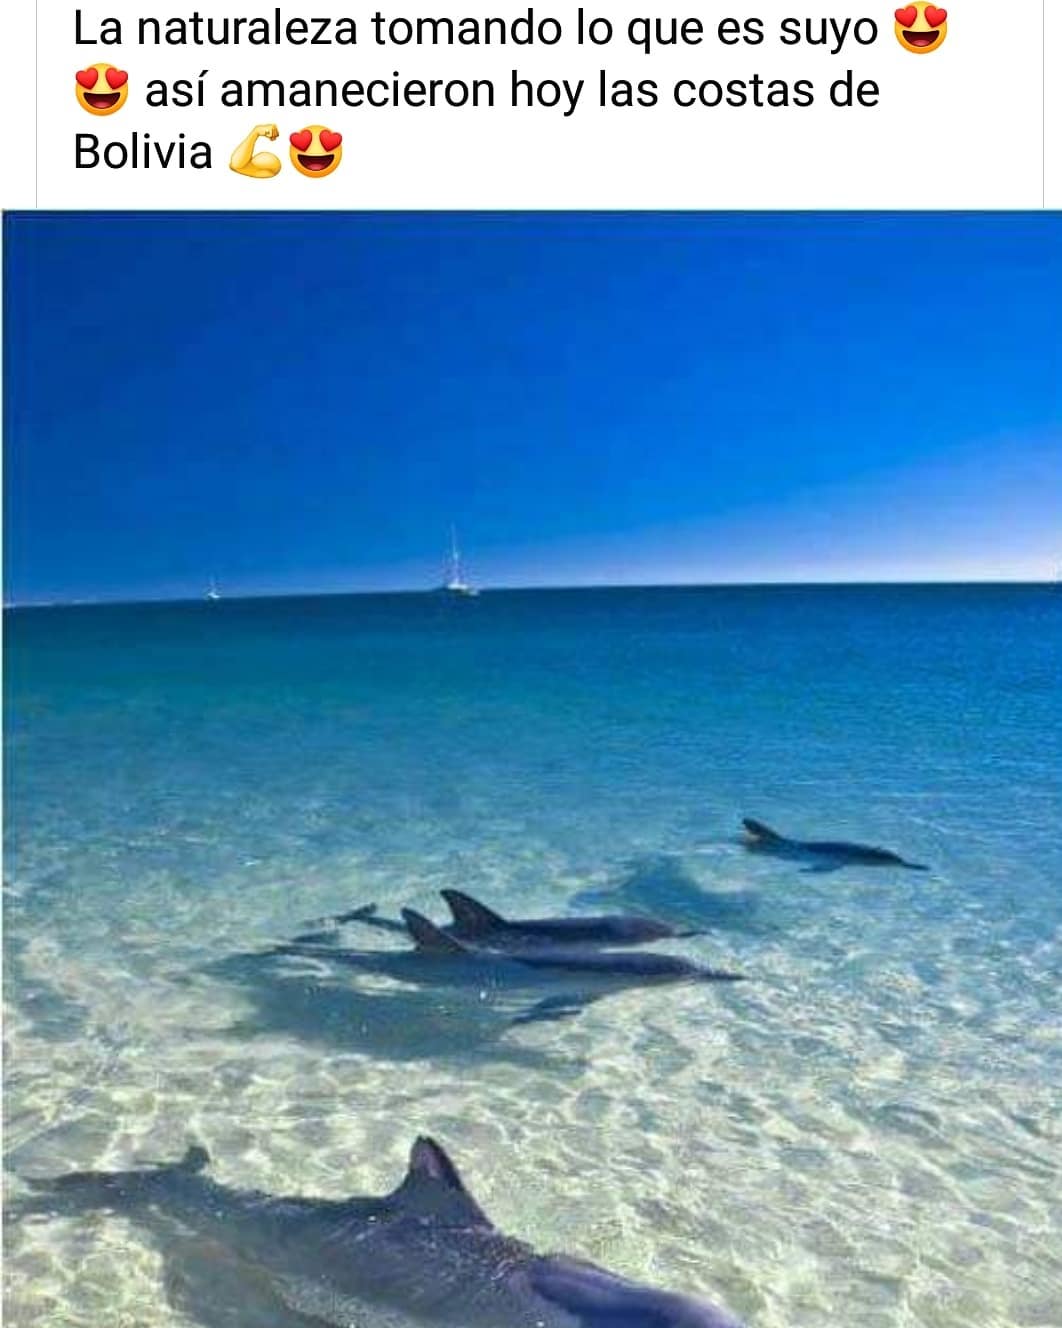 La naturaleza tomando lo que es suyo. Así amanecieron hoy las costas de Bolivia.